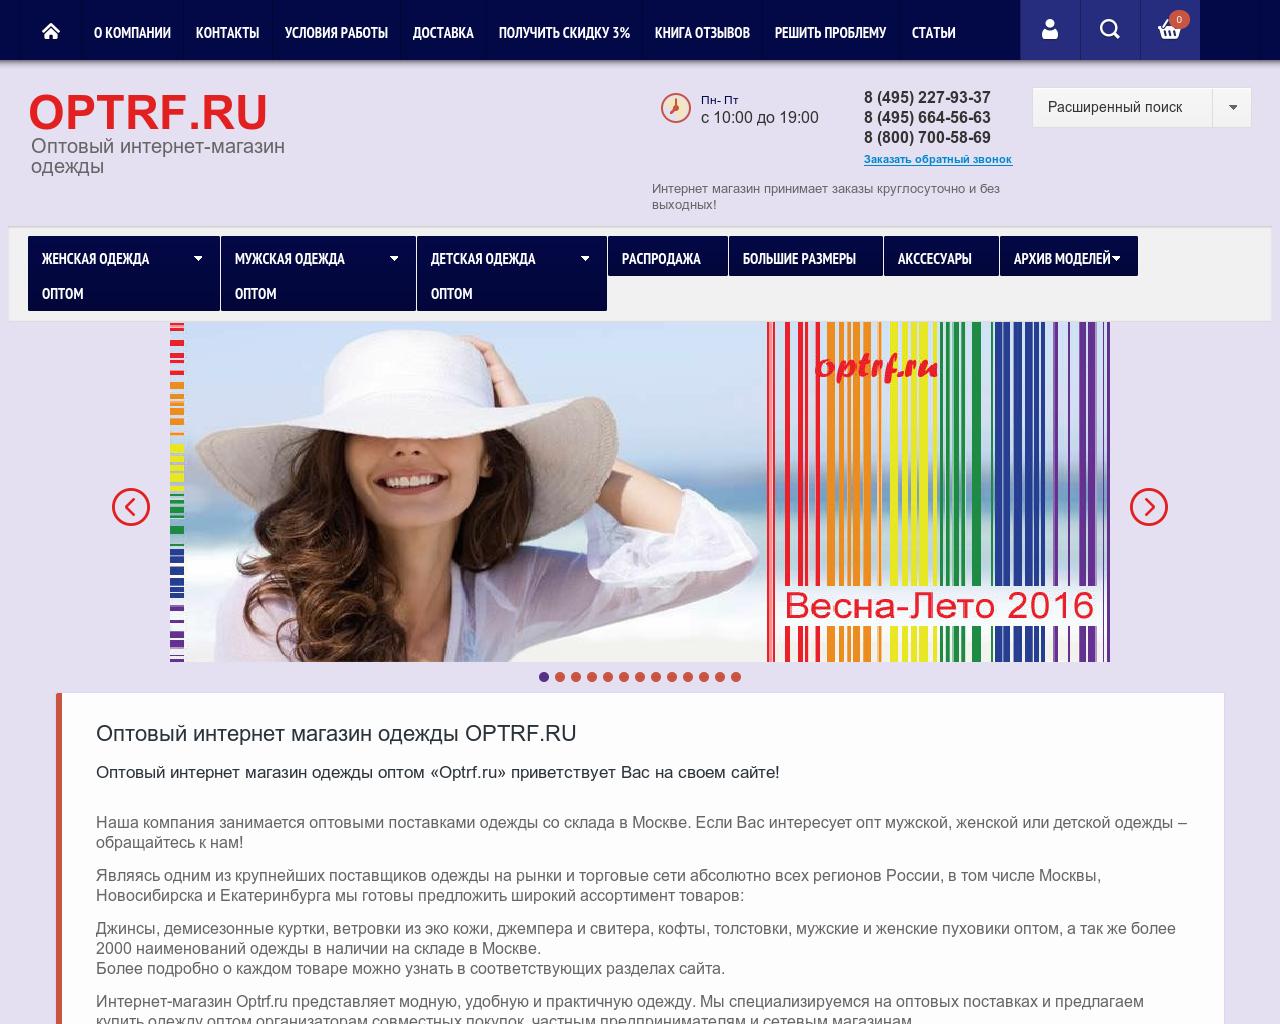 Опт РФ. Optrf.ru оптовый интернет-магазин. Оптовый интернет магазин одежды отзывы. Каталог одежды оптовый шаблоны. Сайт дешевле есть